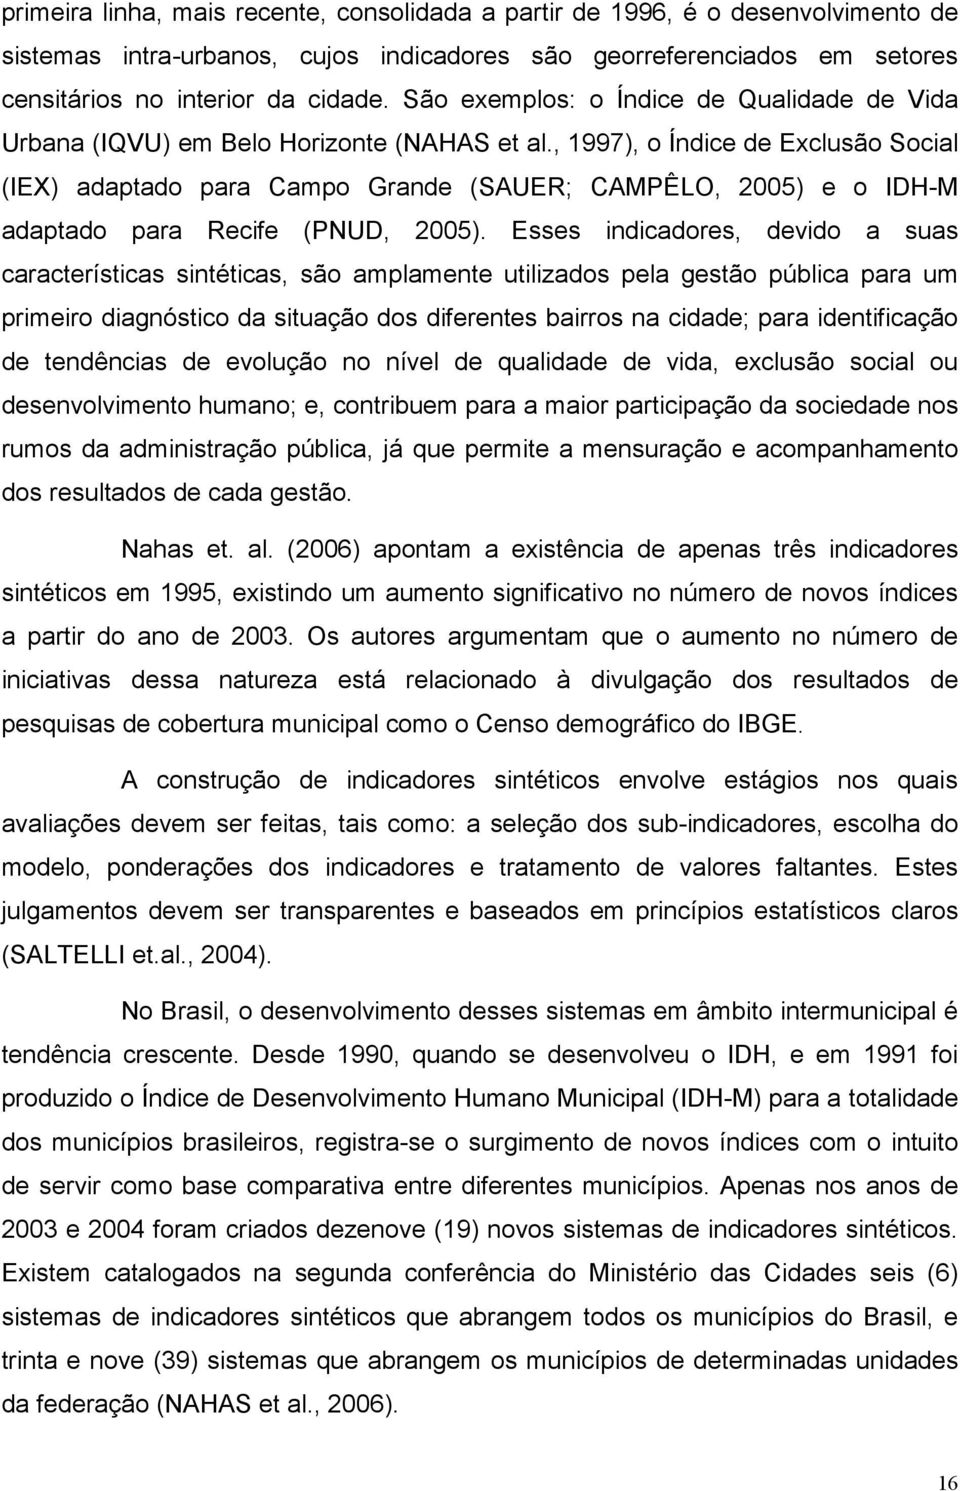 , 1997), o Índice de Exclusão Social (IEX) adaptado para Campo Grande (SAUER; CAMPÊLO, 2005) e o IDH-M adaptado para Recife (PNUD, 2005).